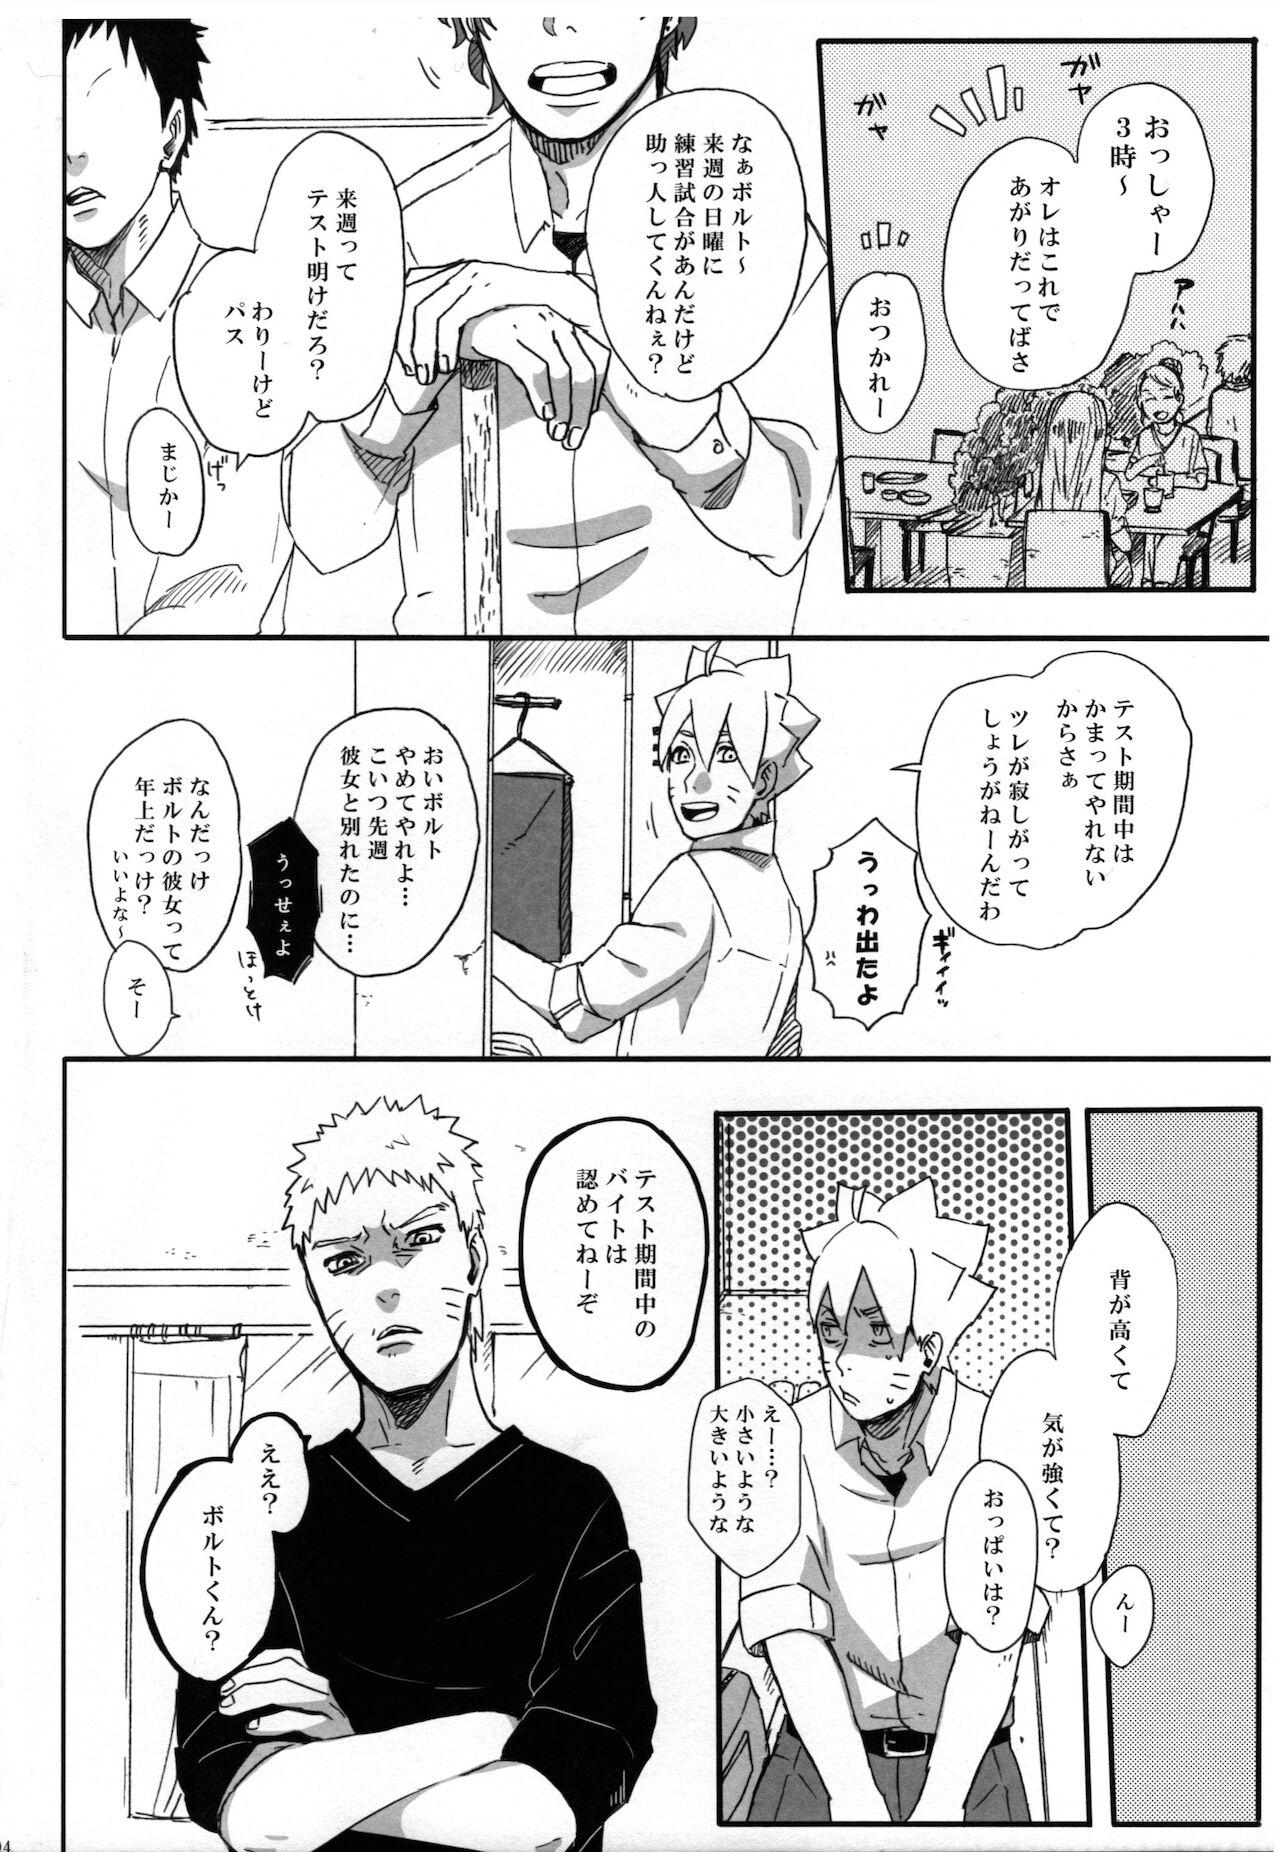 Abuse Getsuyou wa itsumo chikoku sunzen - Naruto Blackcocks - Page 3